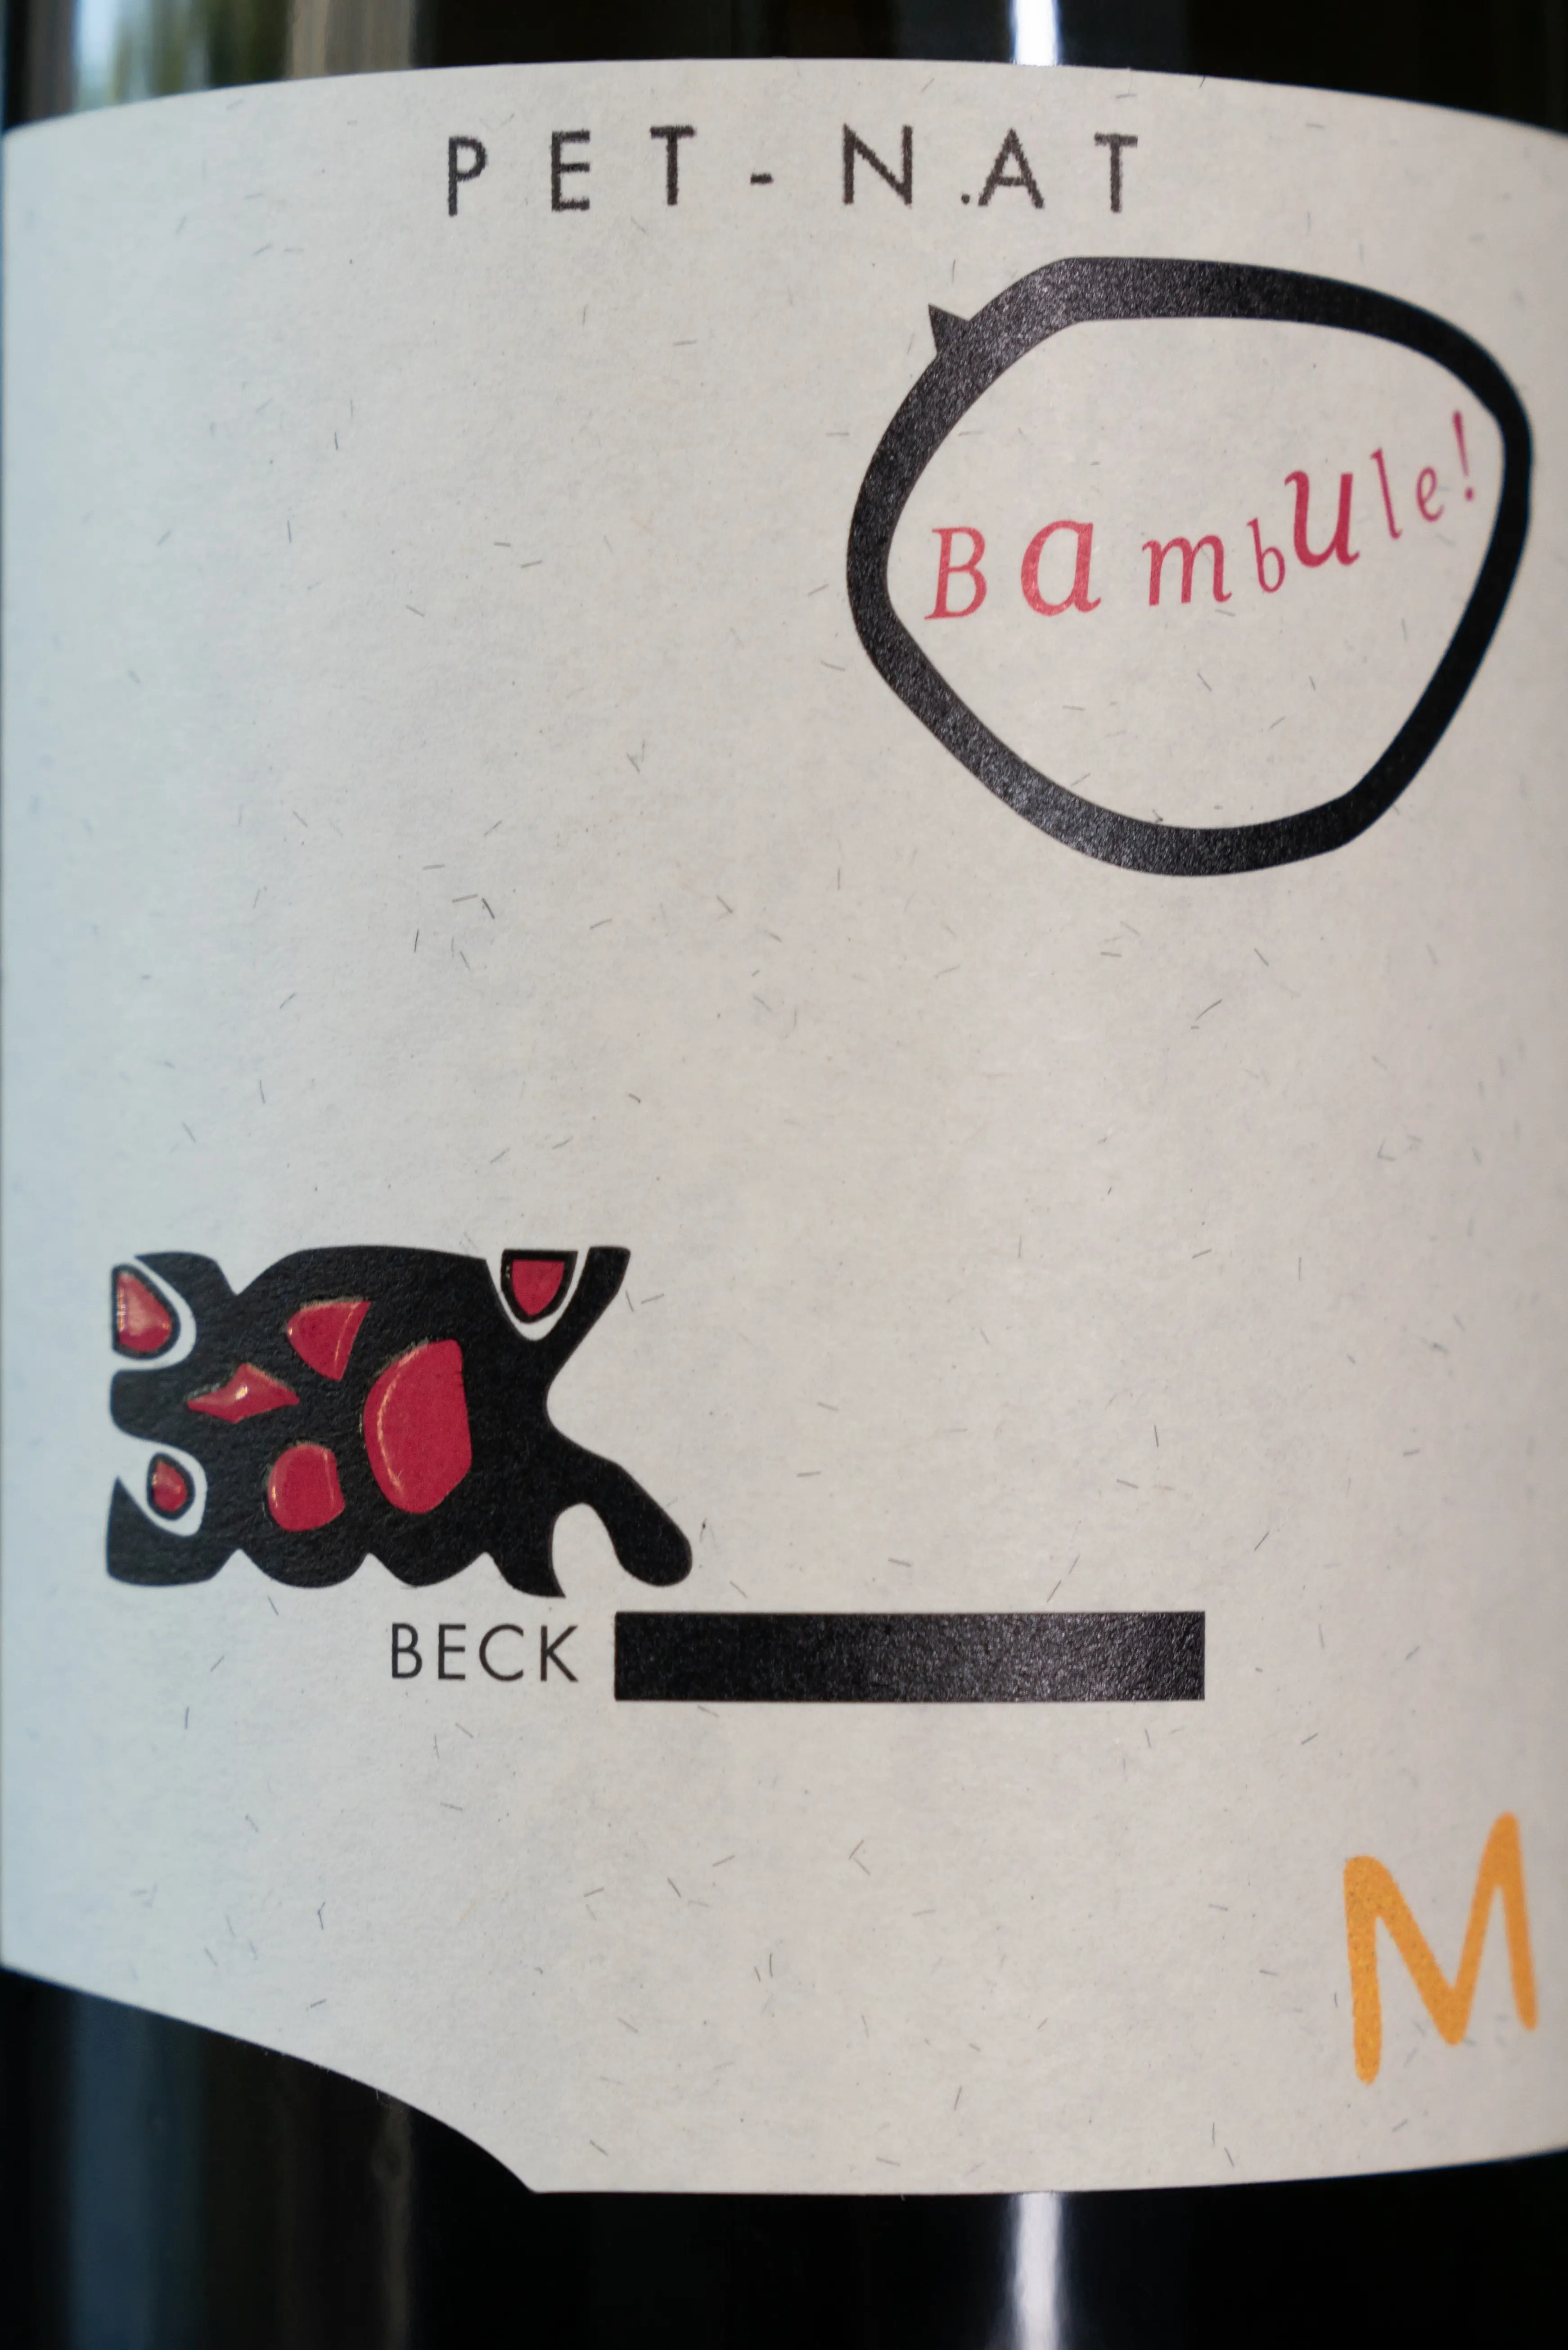 Игристое вино Judith Beck Pet-Nat Bambule М 2020 этикетка